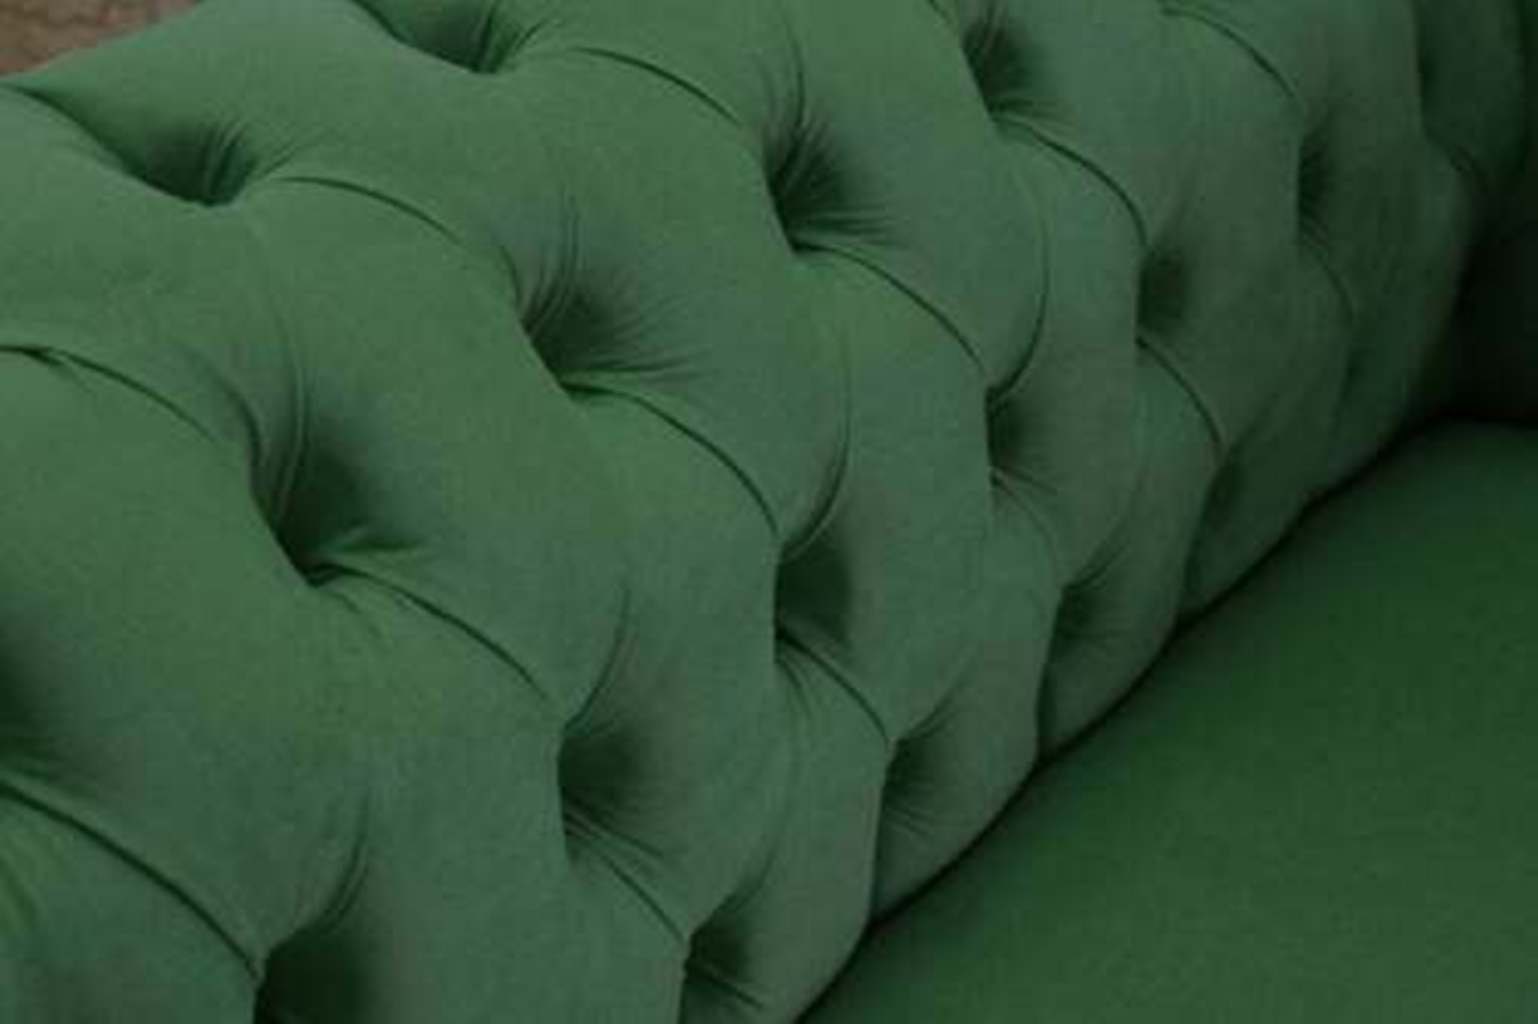 Samt Sitzer JVmoebel Textil Couch 2 Chesterfield-Sofa, Couchen Designer Sofa Cheserfield